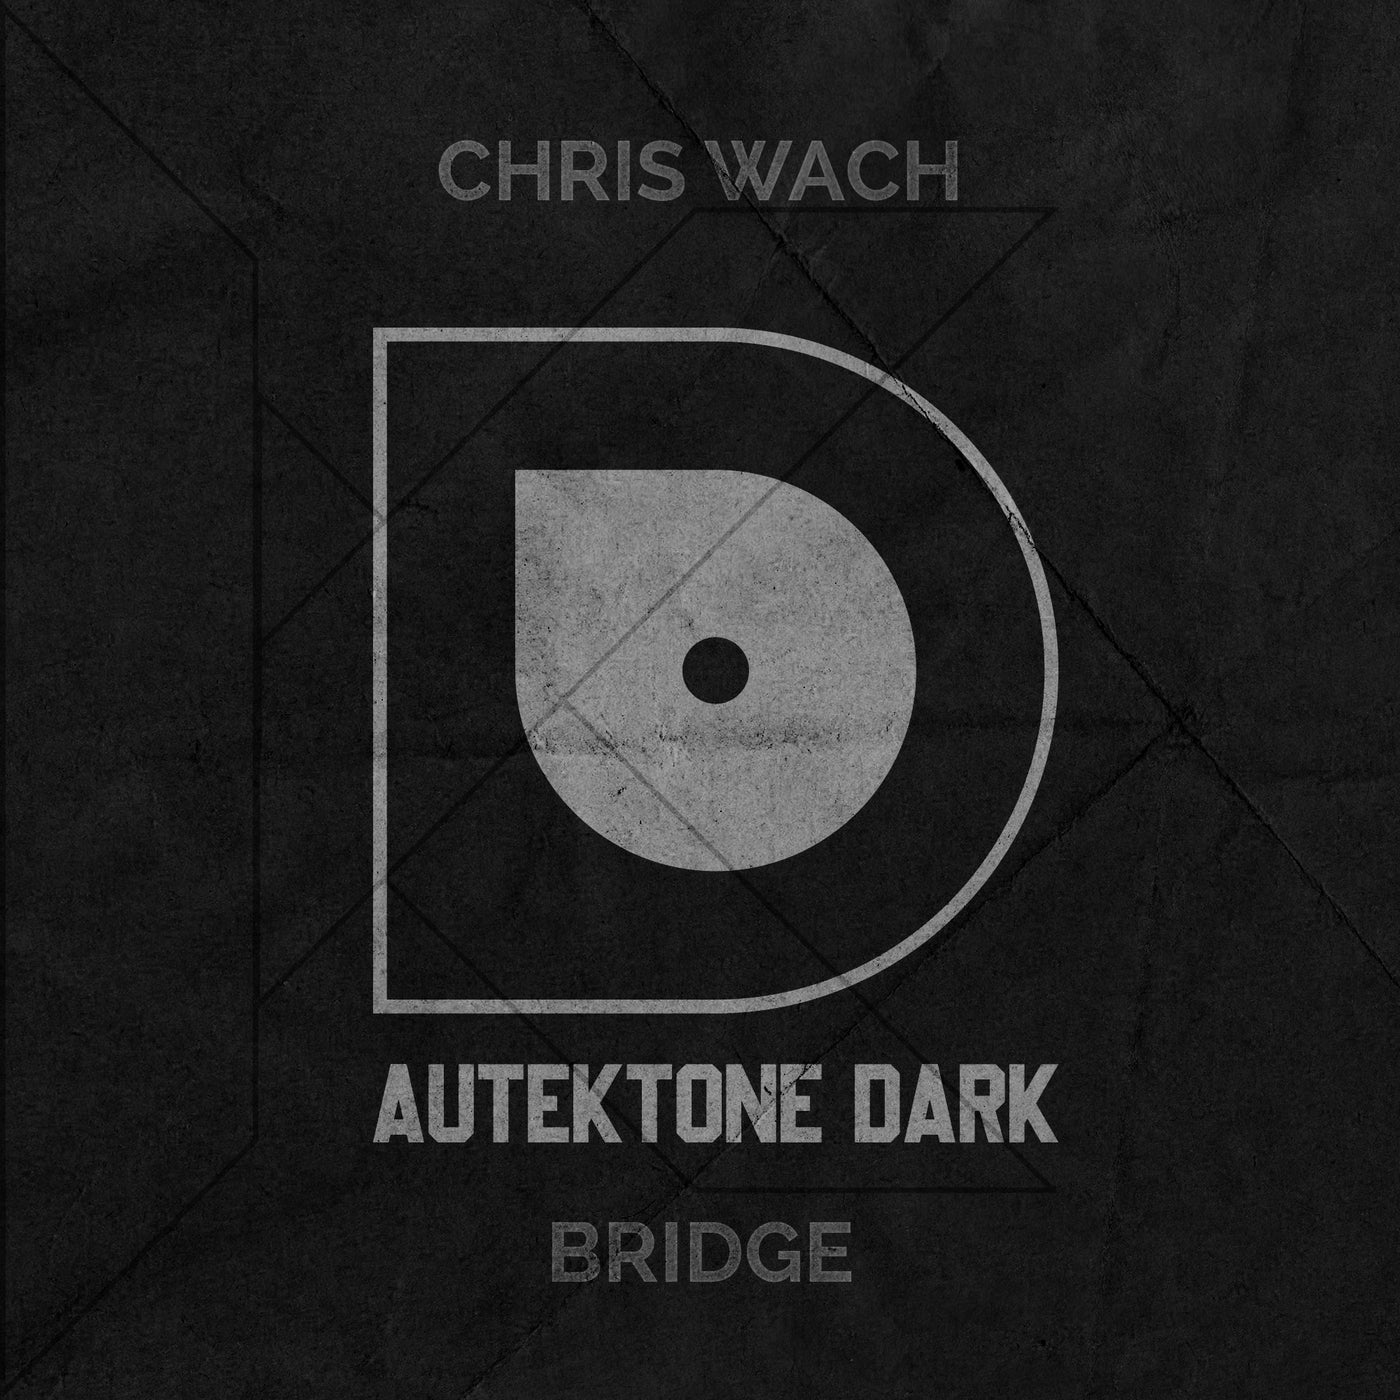 Chris Wach - Bridge [AUTEKTONE DARK]